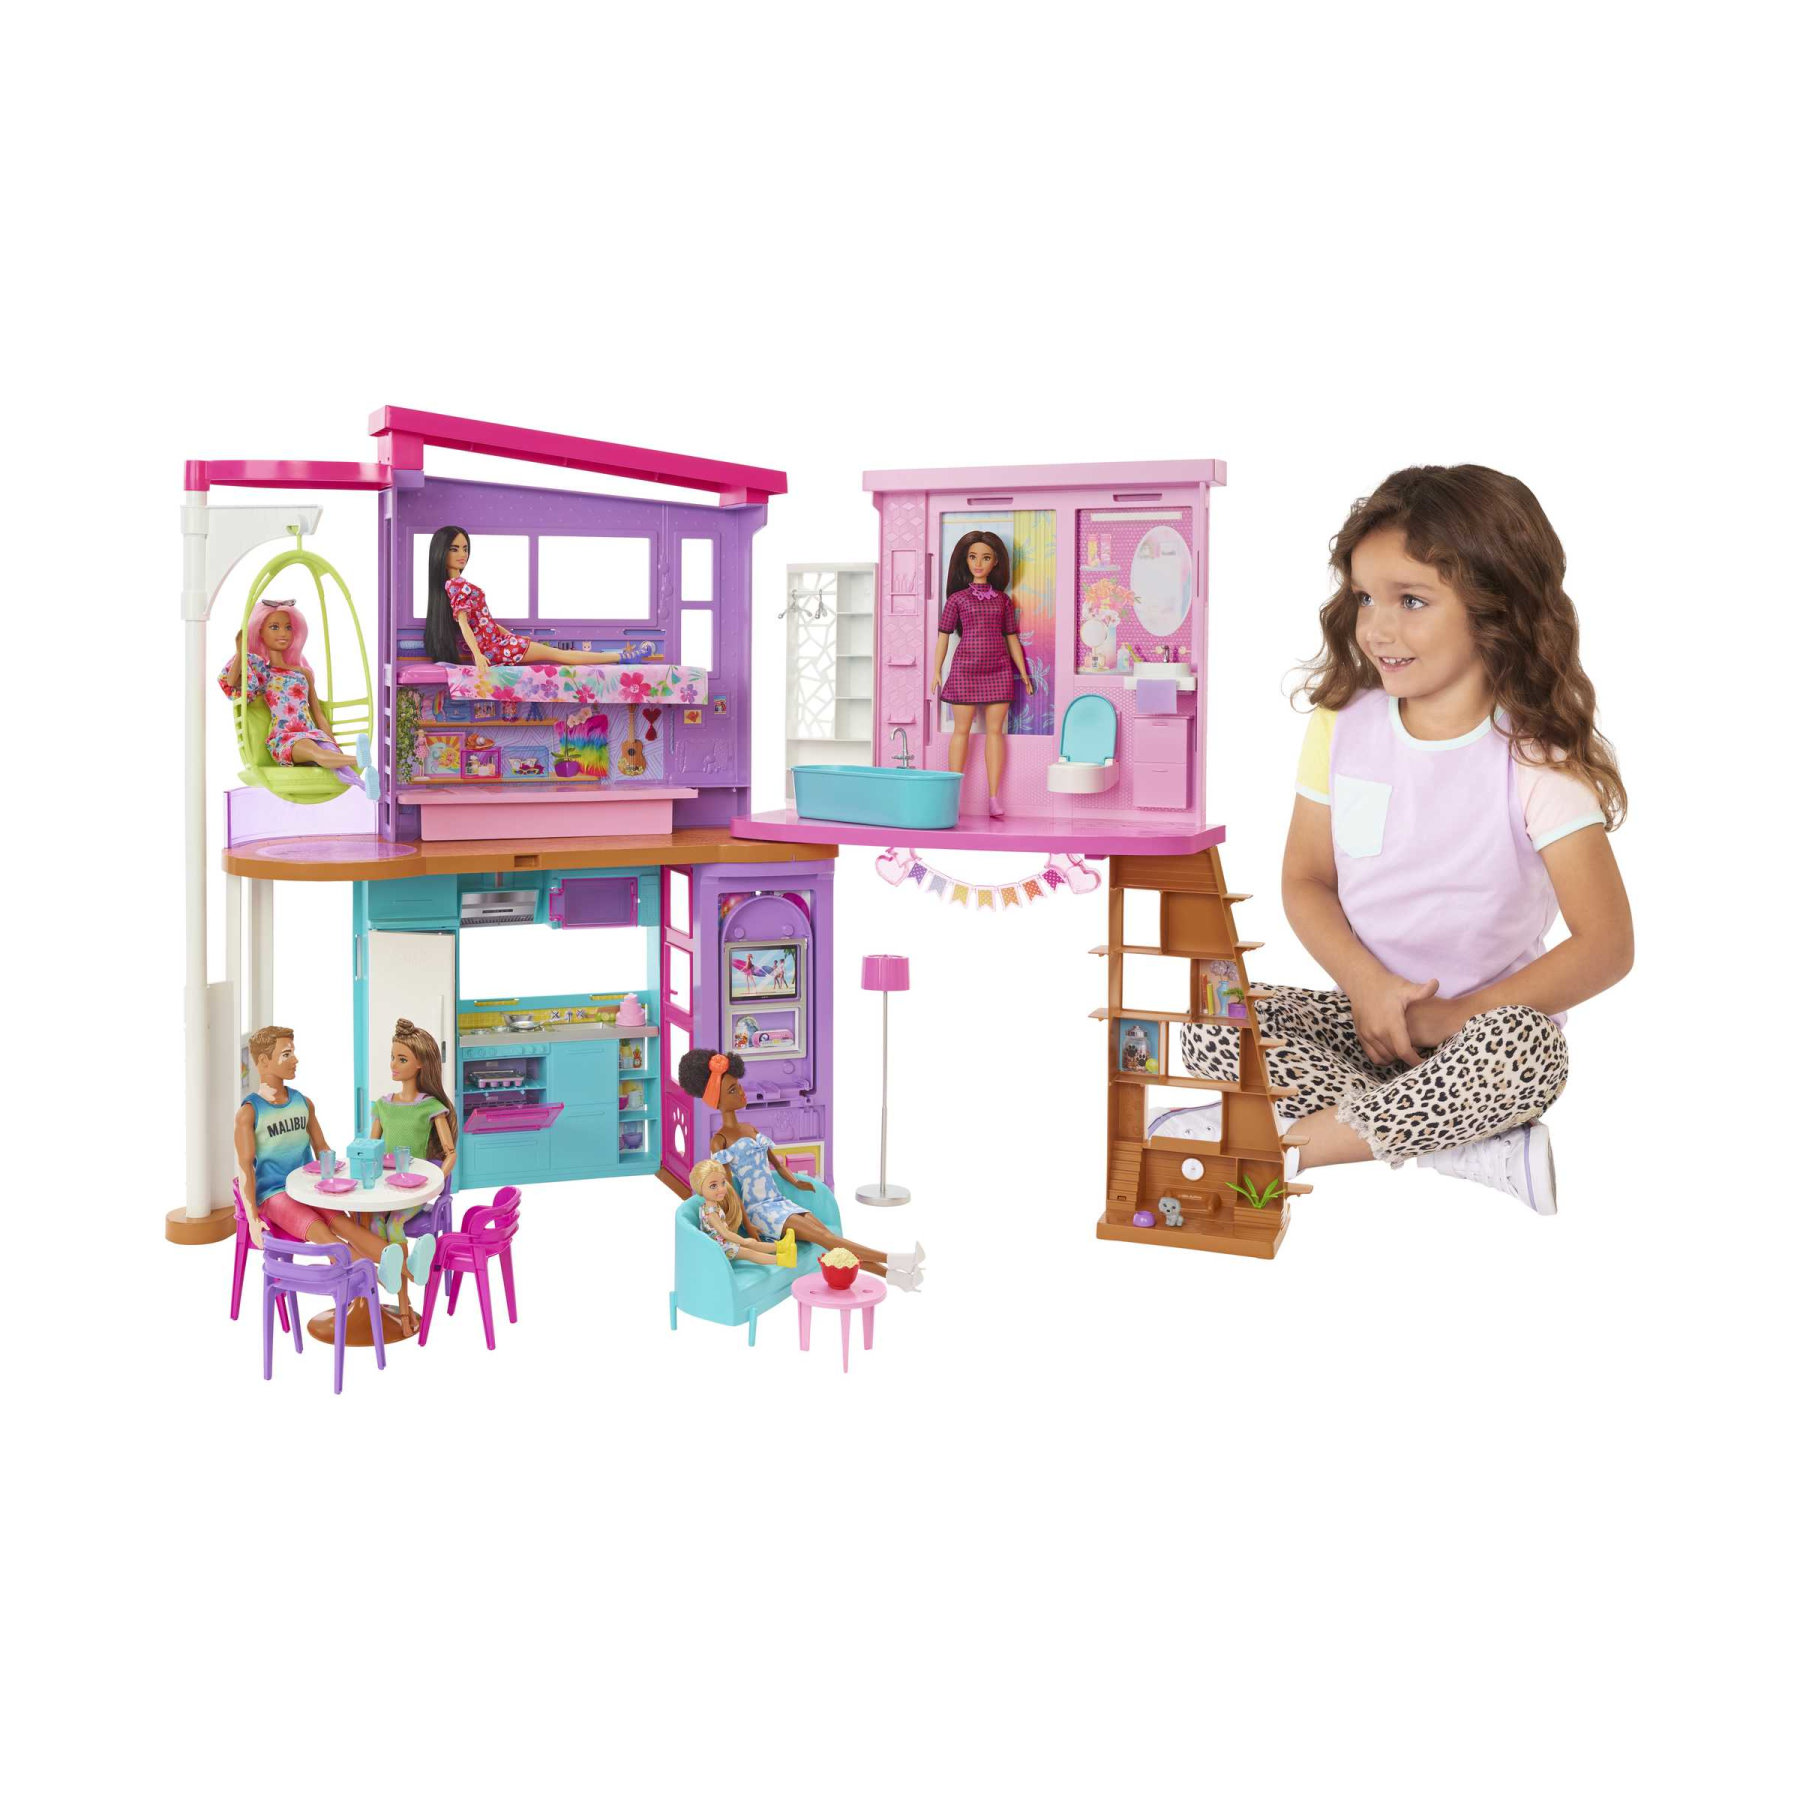 Barbie casa di malibu (106 cm) playset casa delle bambole con 2